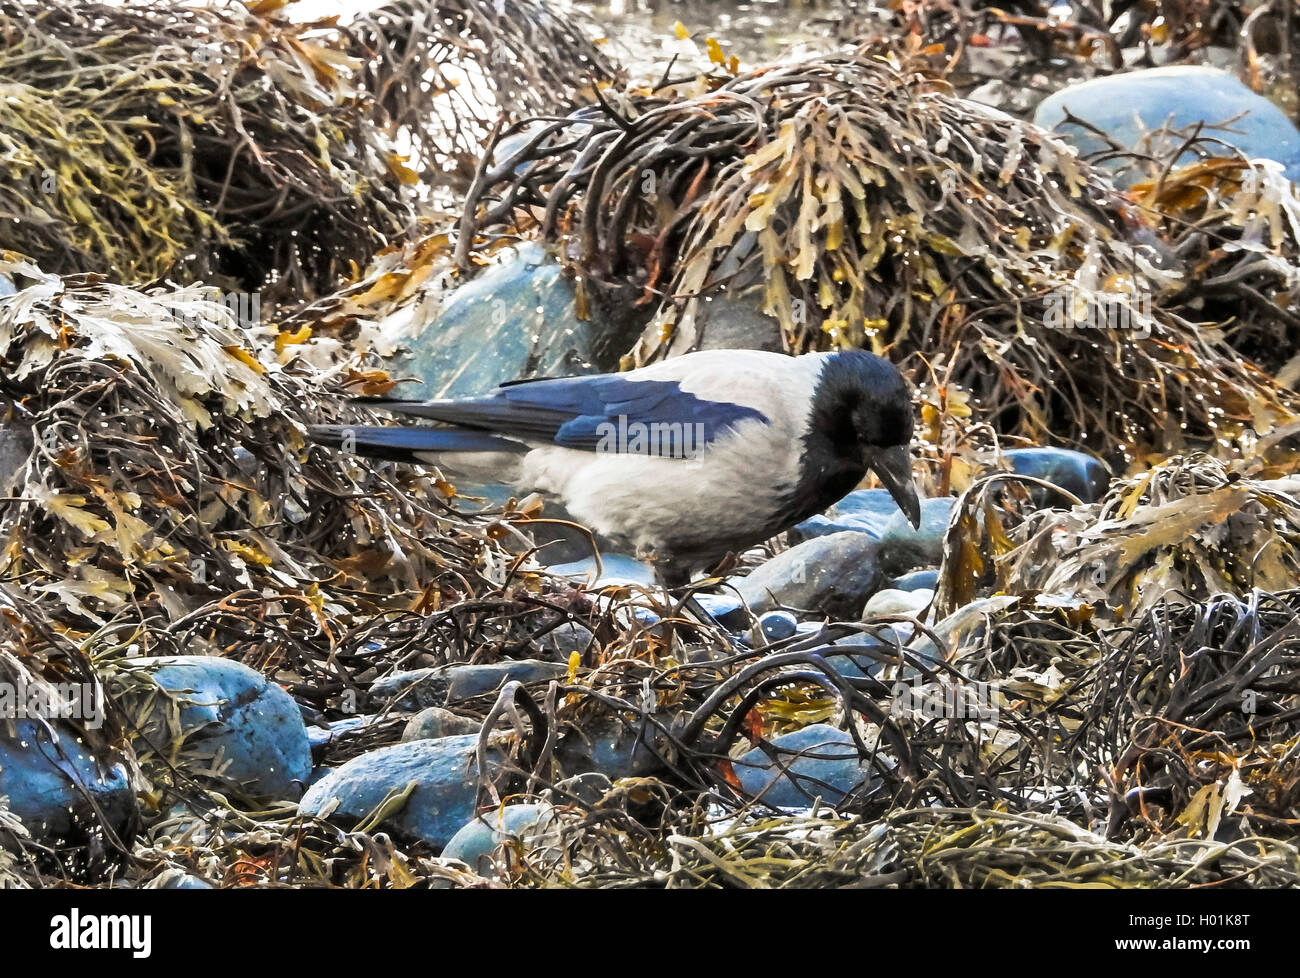 Nebelkraehe, Nebel-Kraehe  (Corvus corone cornix, Corvus cornix), sucht Futter am Strand, Norwegen, Troms | Hooded crow (Corvus  Stock Photo